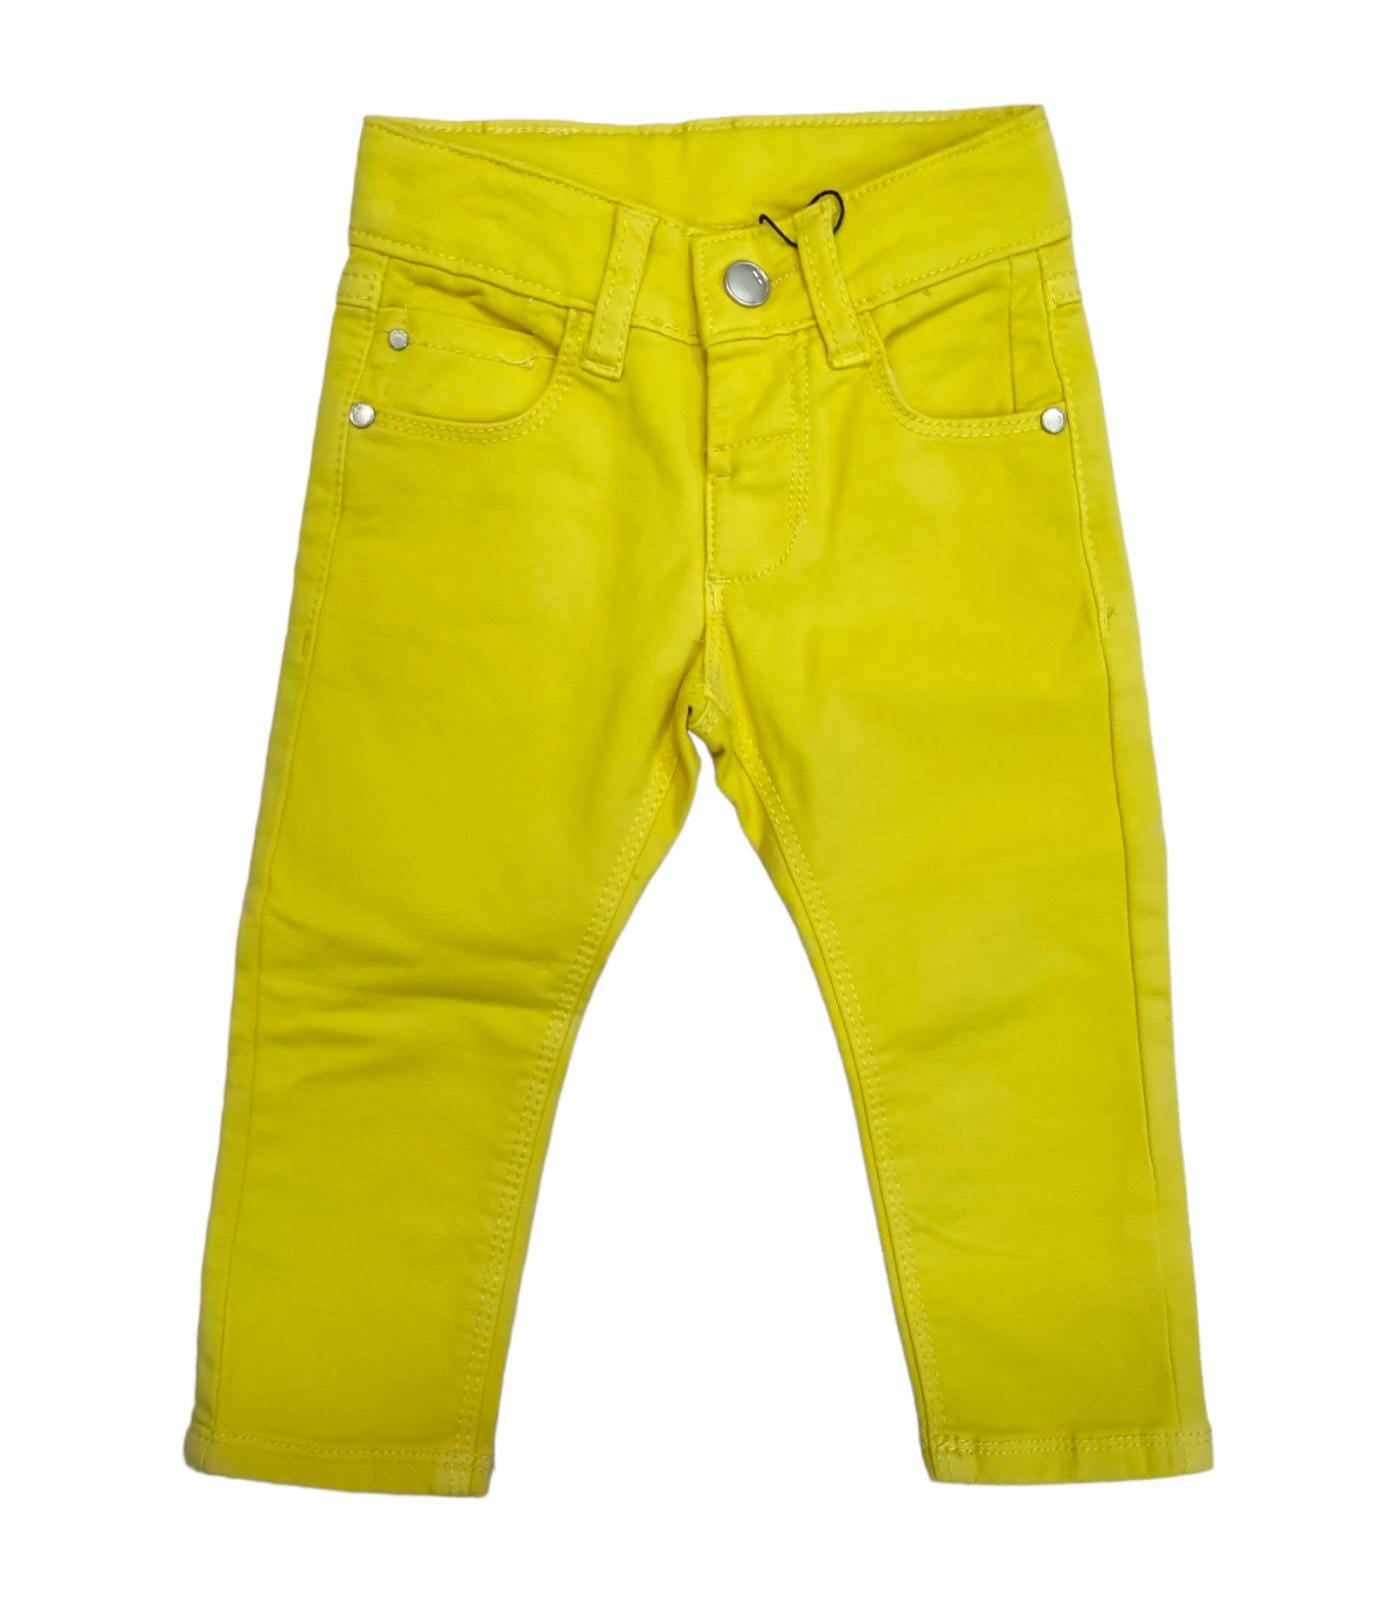 Pantalone Jeans Cinque Tasche in Cotone Colorato Primaverile Bambino 6-36 Mesi